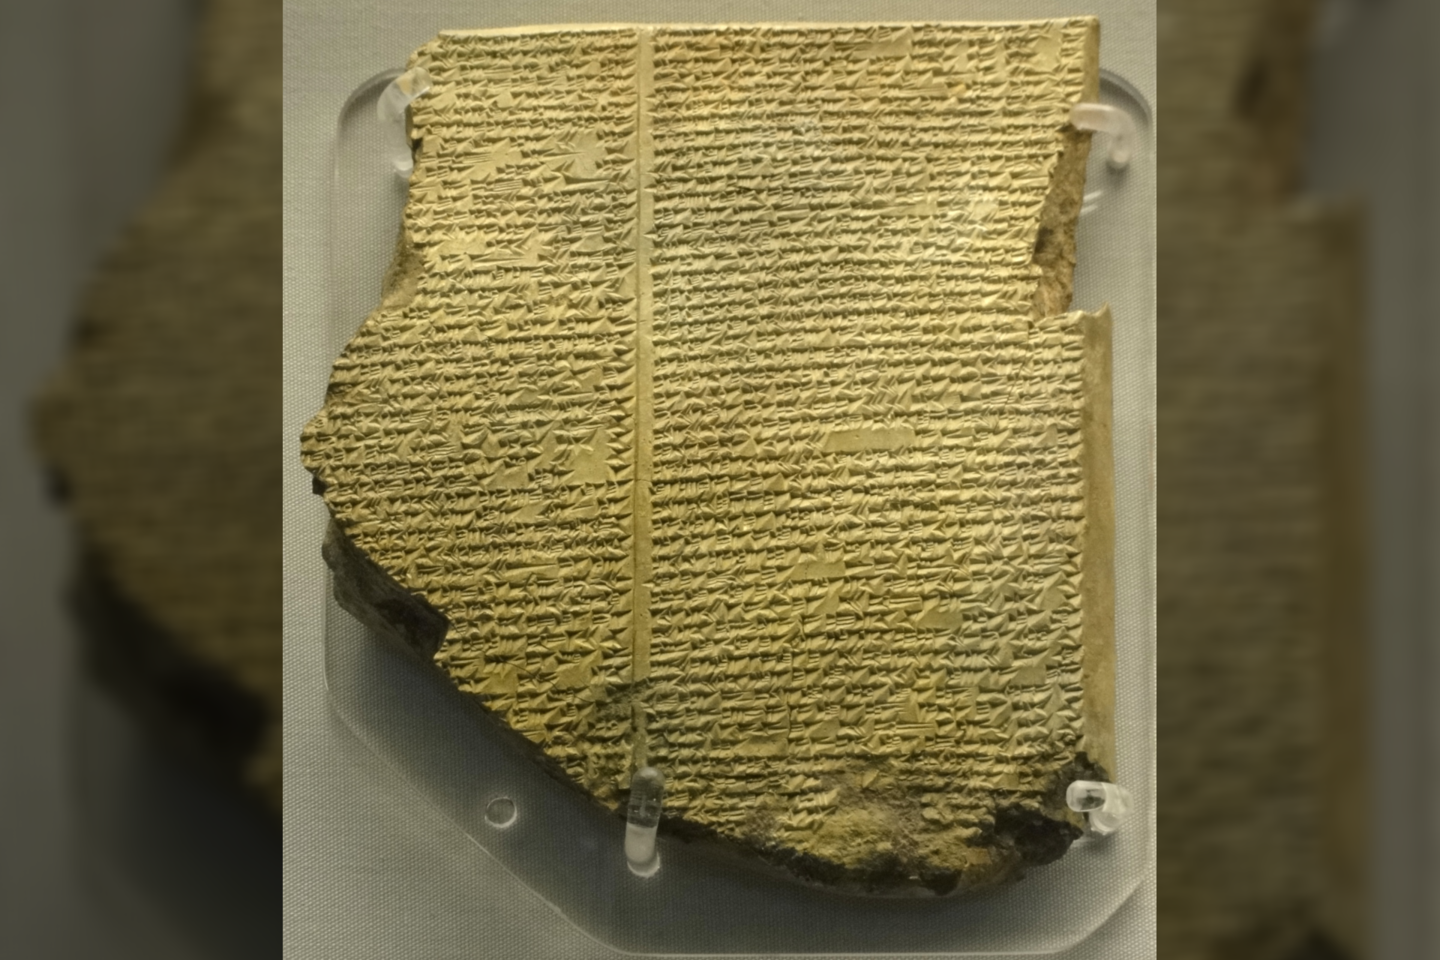  Ašurbanipalo bibliotekoje yra ir seniausias užrašytas mitologinis kūrinys - Gigamešo epas.<br>Wikimedia commons